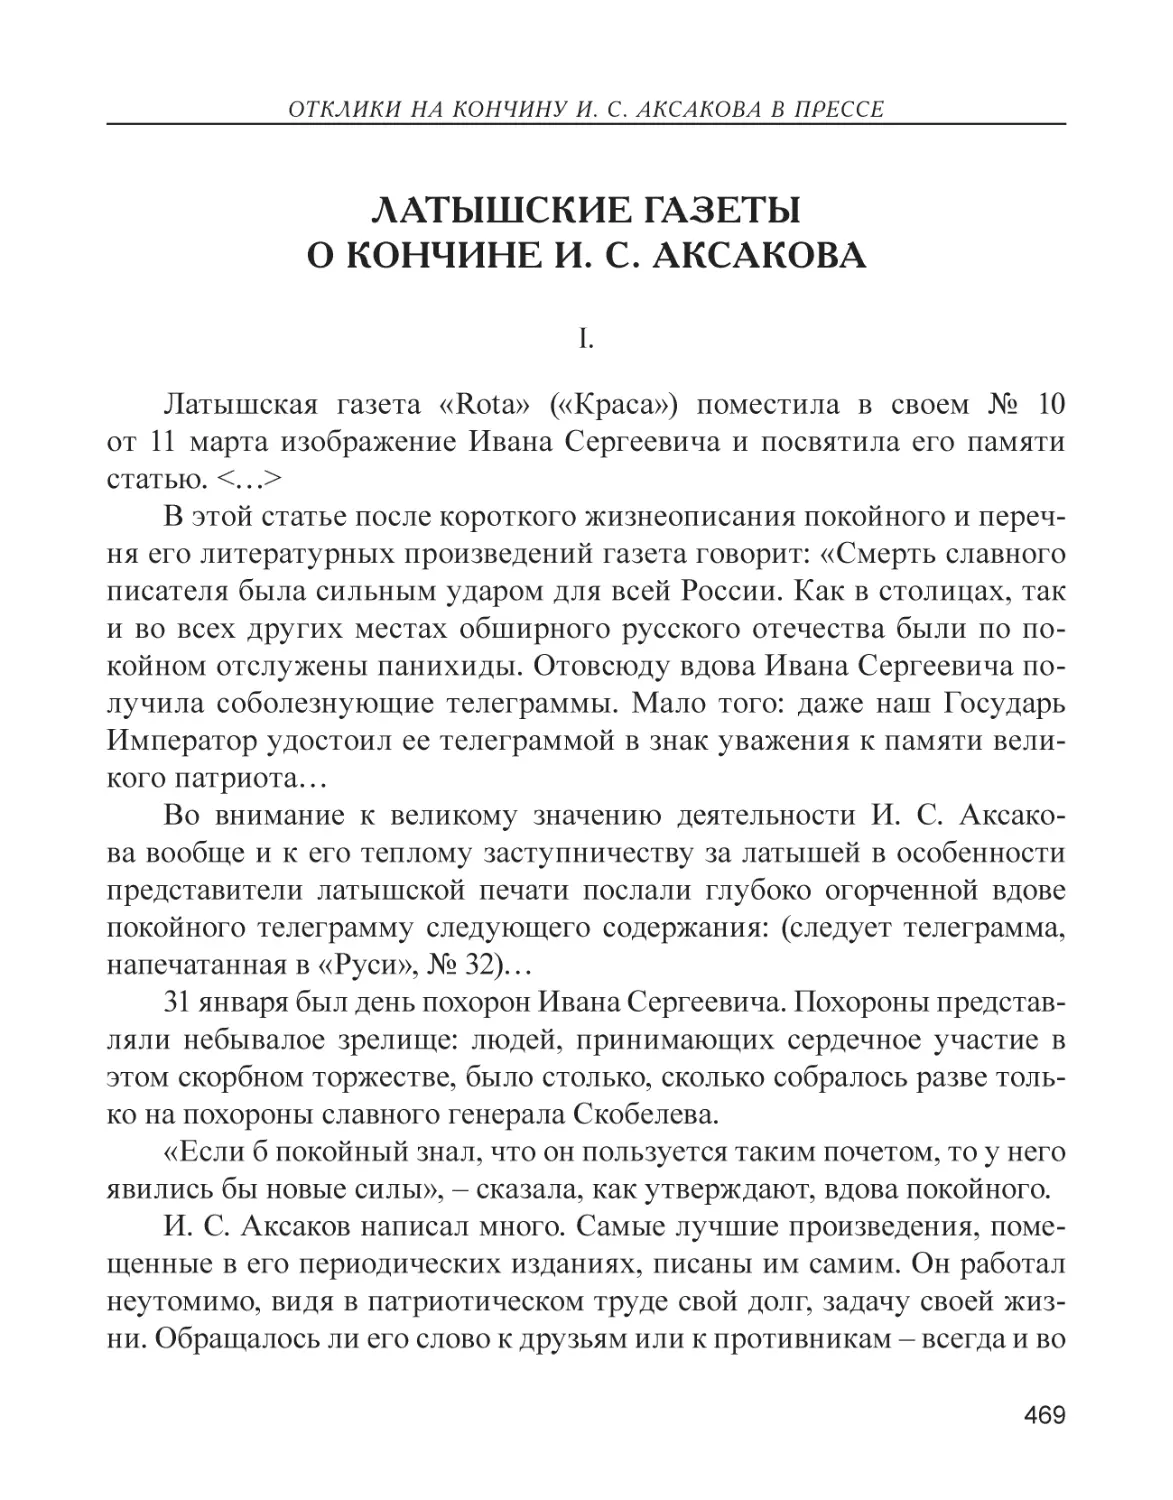 Латышские газеты о кончине И. С. Аксакова